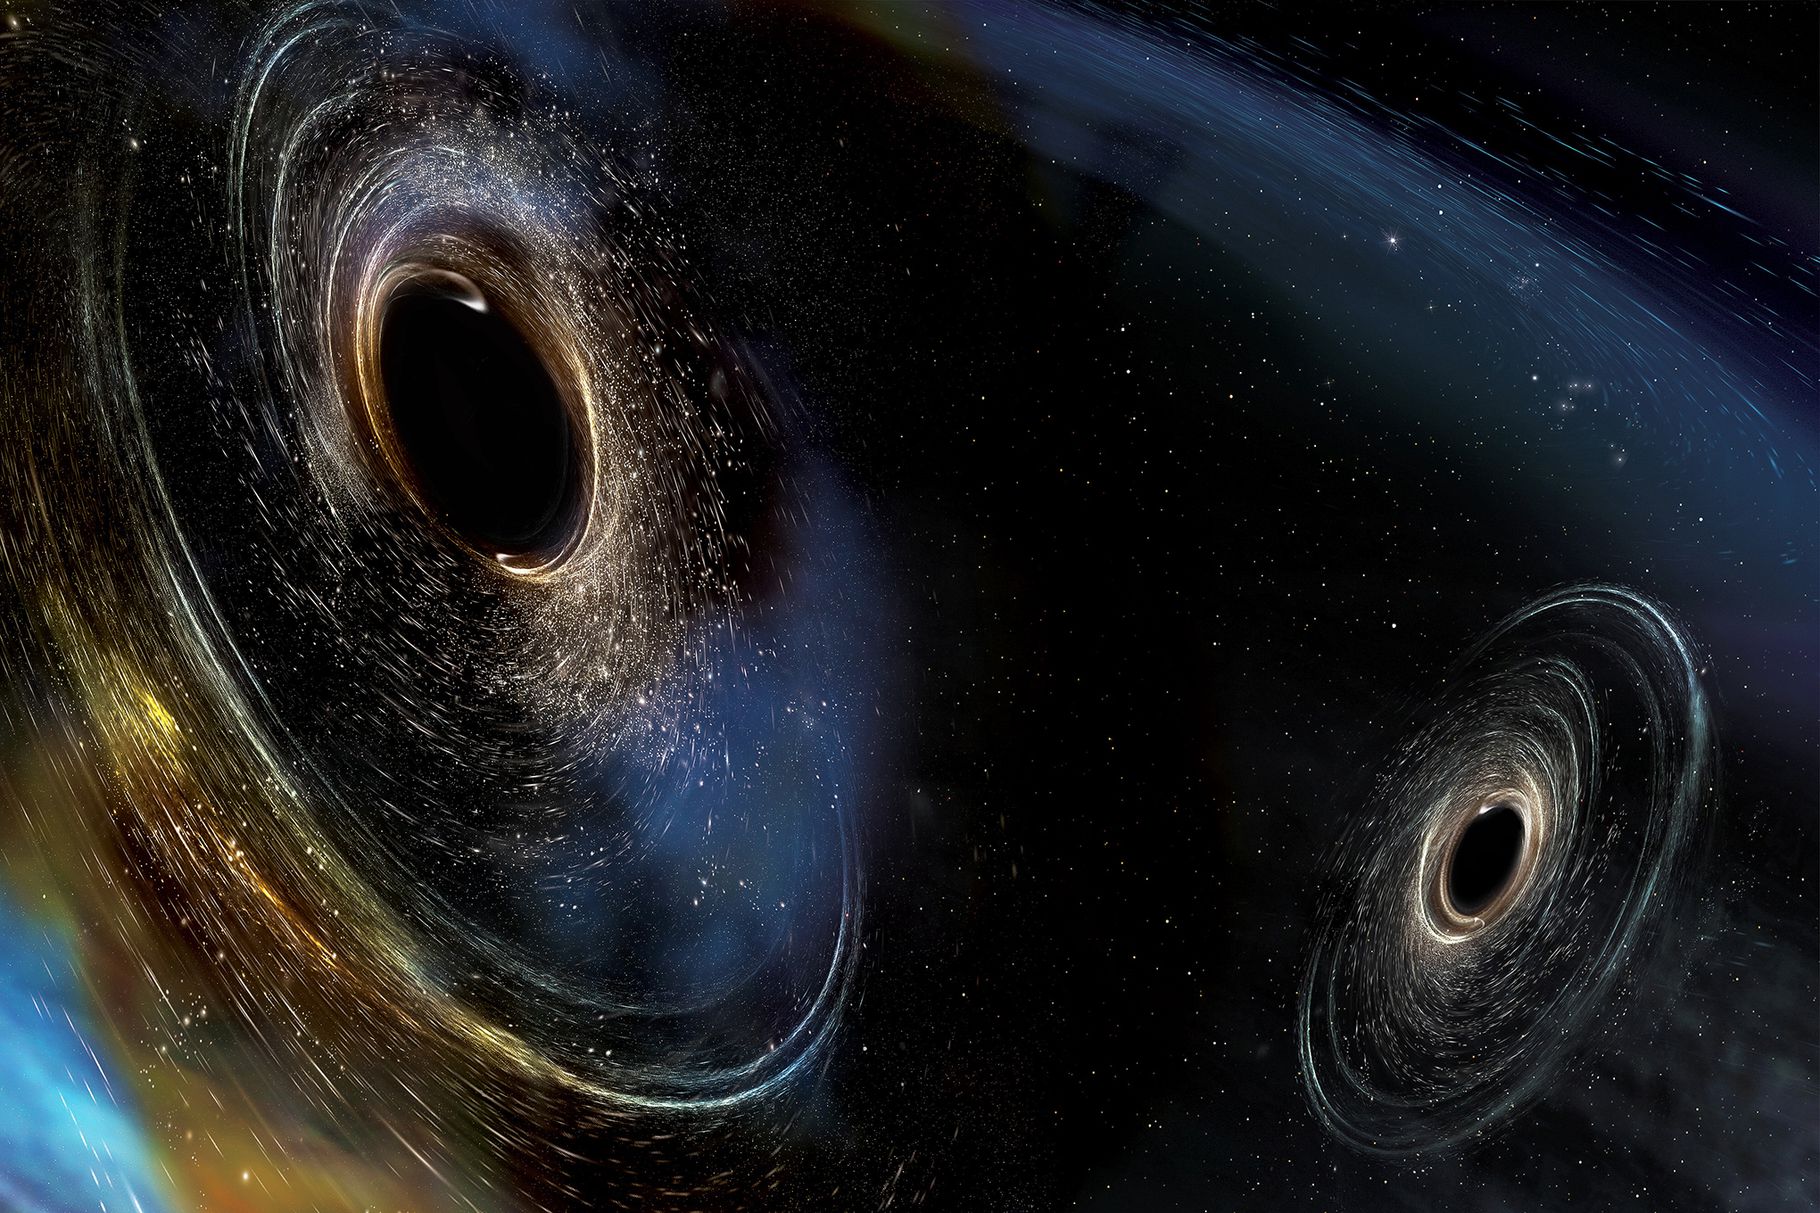 Művészi ábrázolás a két fekete lyuk találkozásáról Image: LIGO / Caltech / MIT / Sonoma State (Aurore Simonnet)